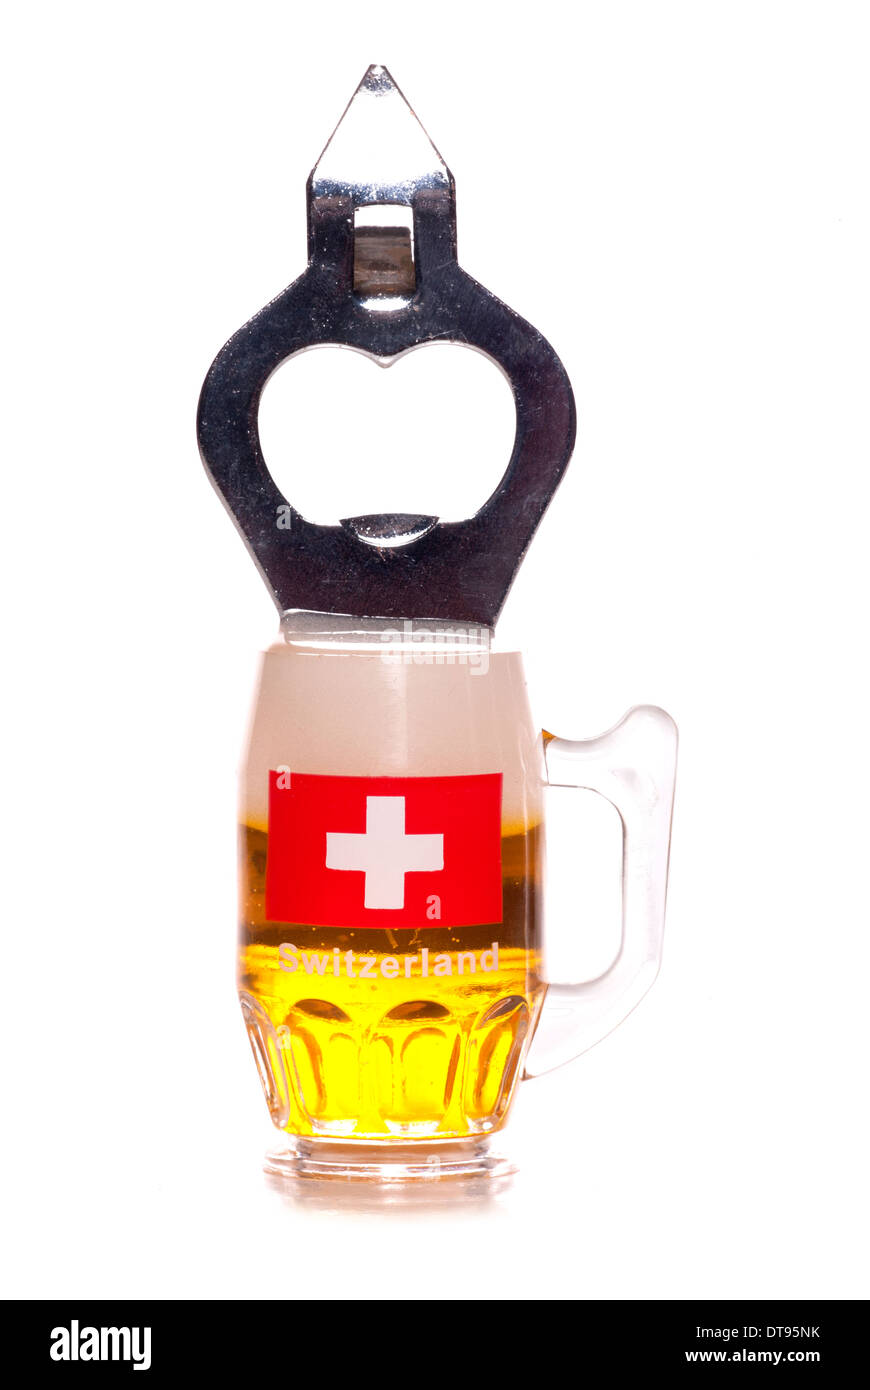 switzerland beer bottle opener cutout Stock Photo